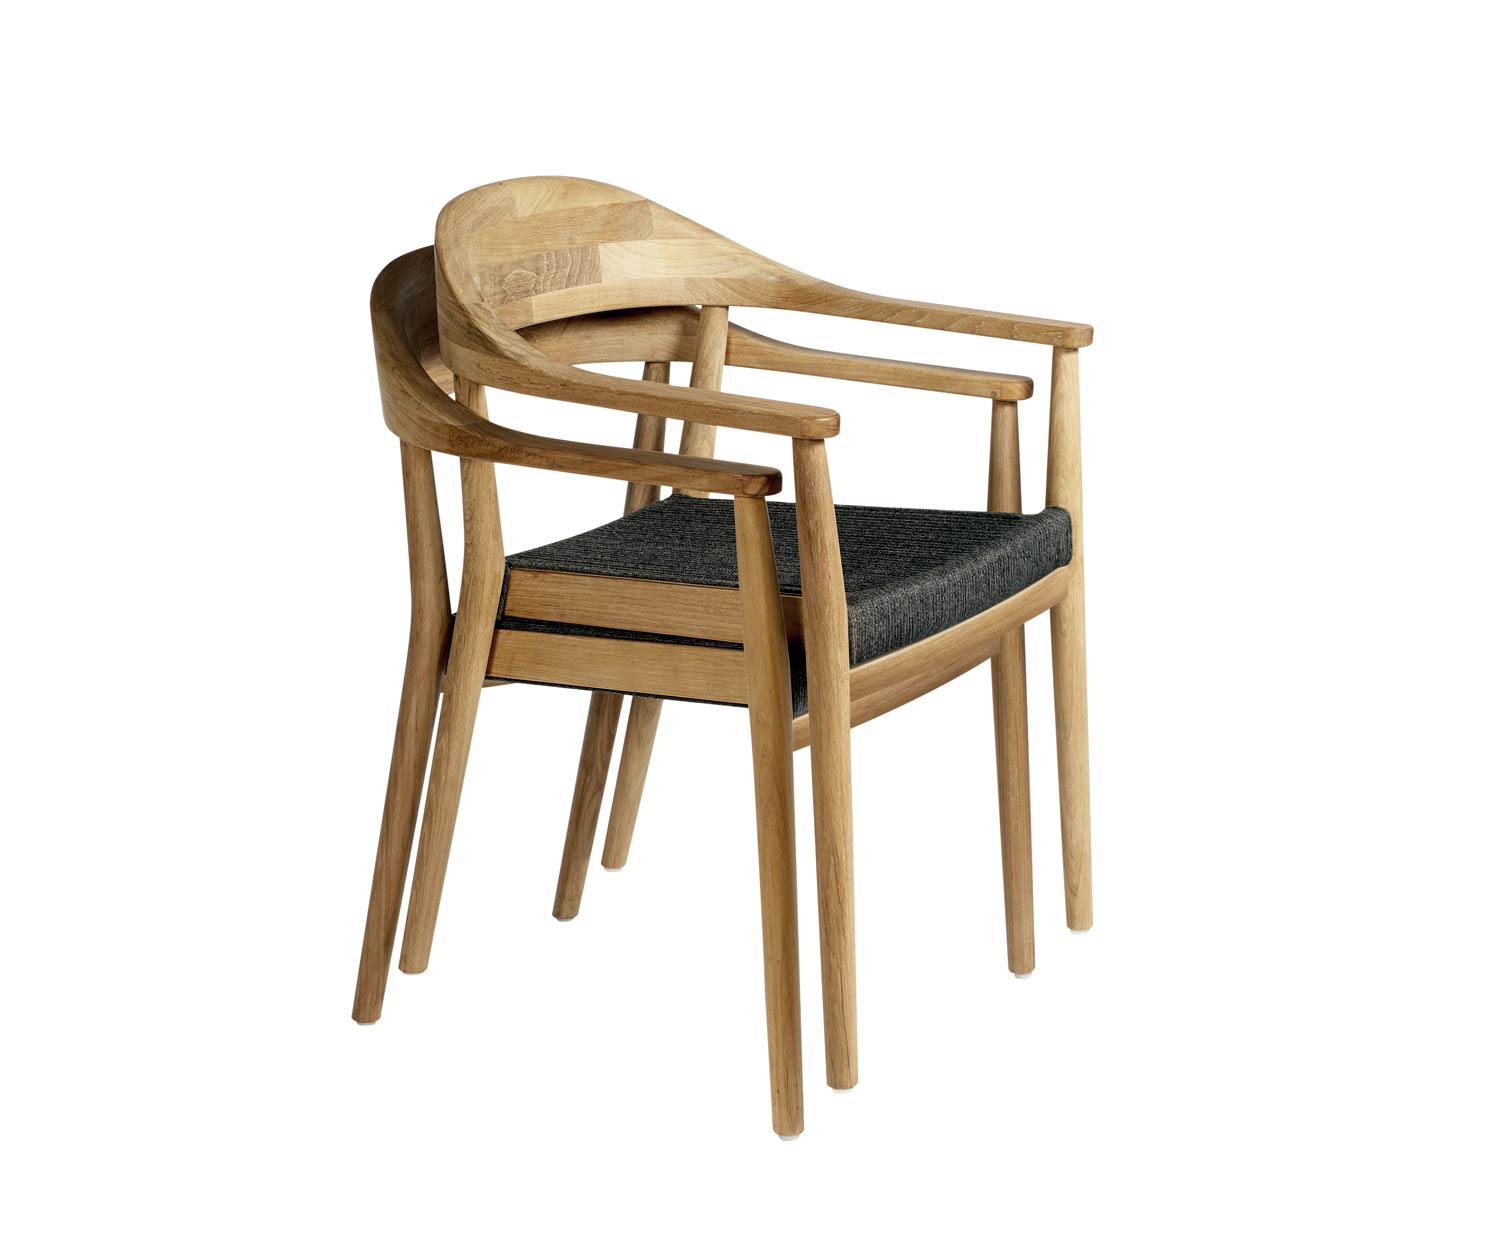 Oasiq La chaise Design Copenhagen est empilable jusqu'à deux chaises